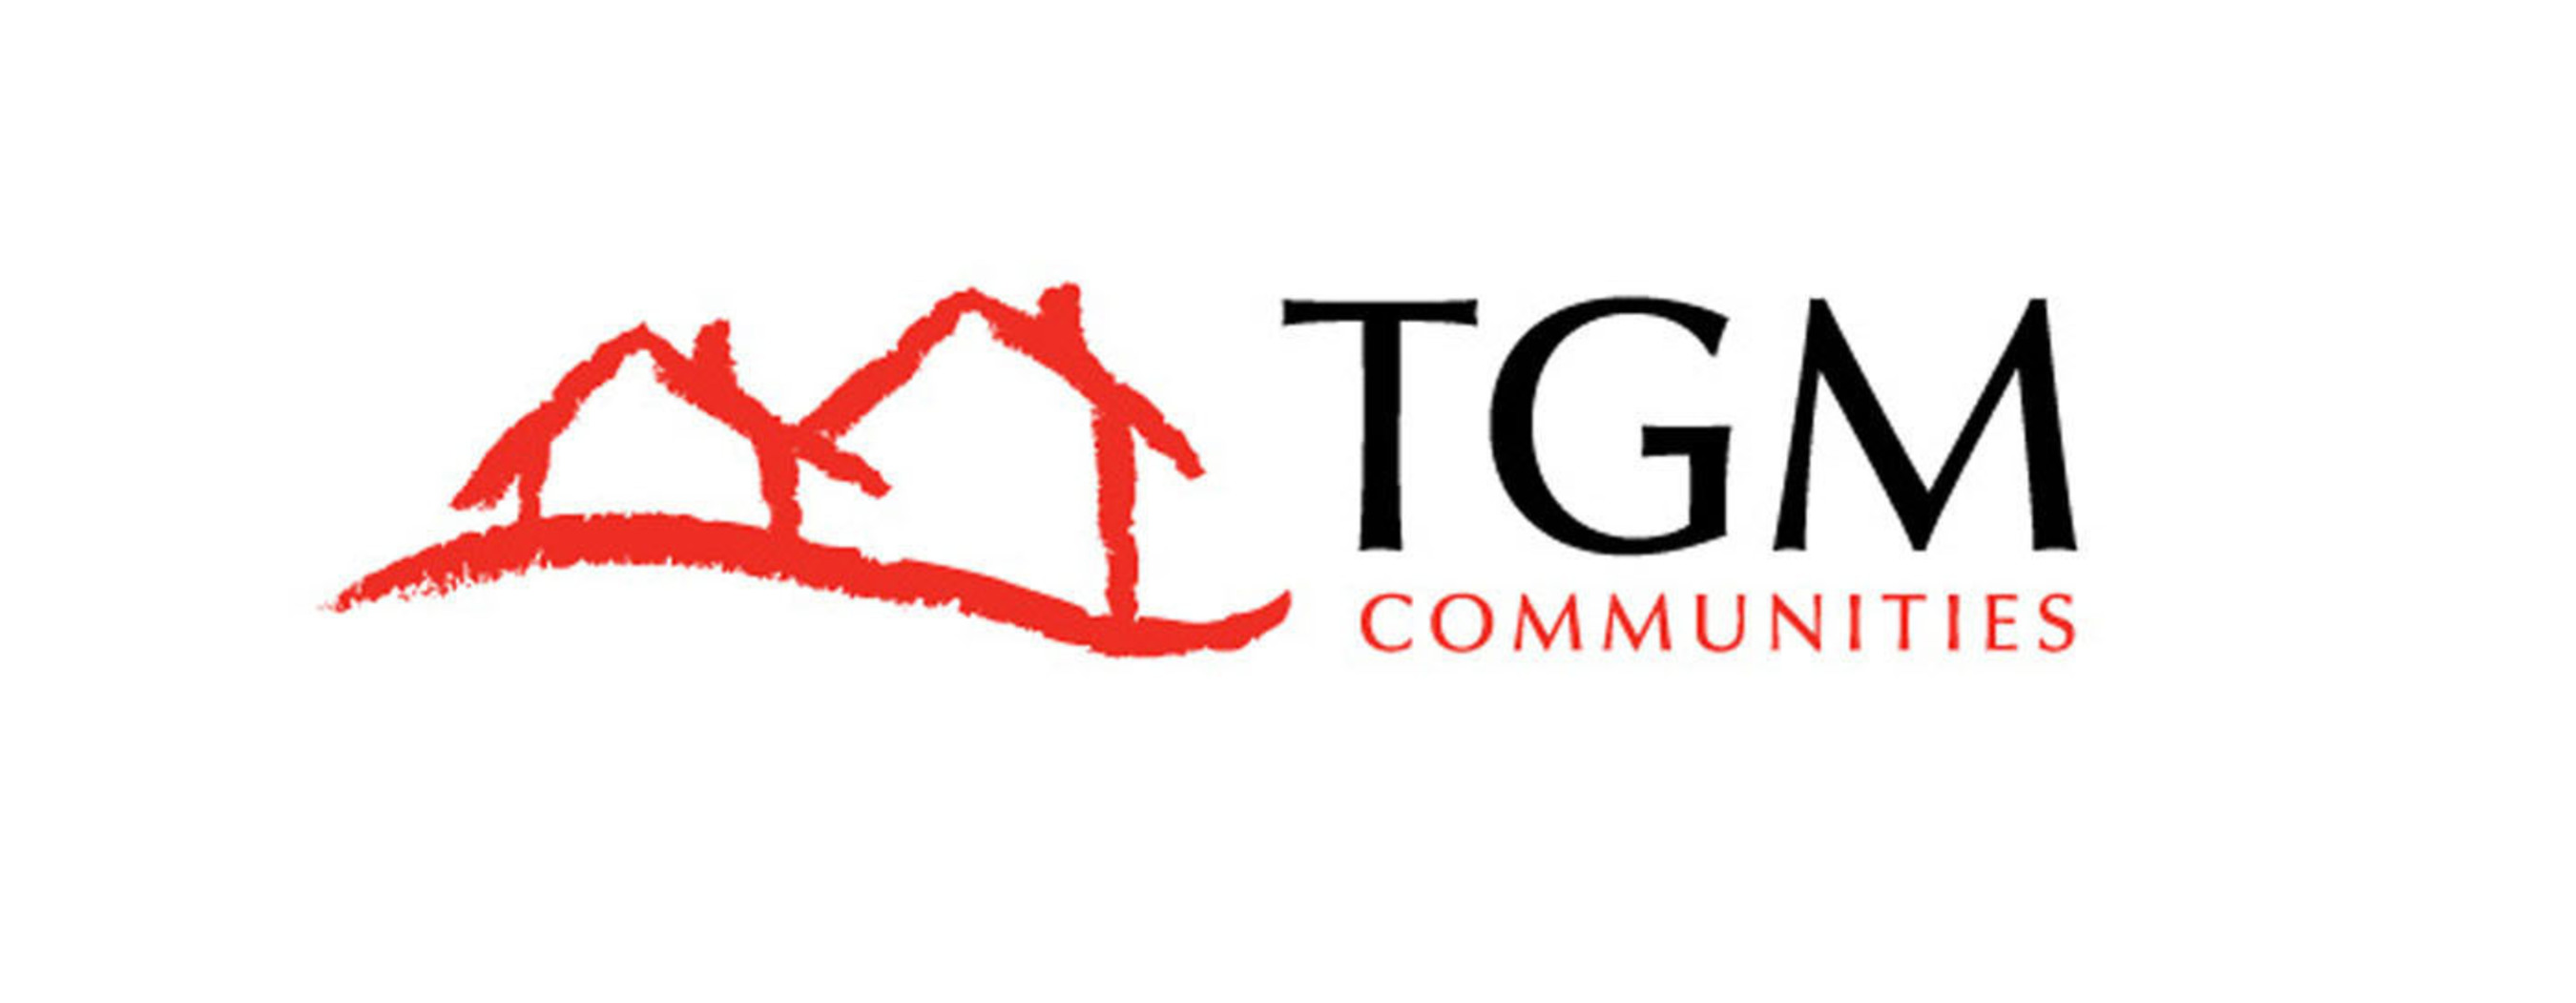 The new TGM Communities logo. (PRNewsFoto/TGM Associates L.P.) (PRNewsFoto/)